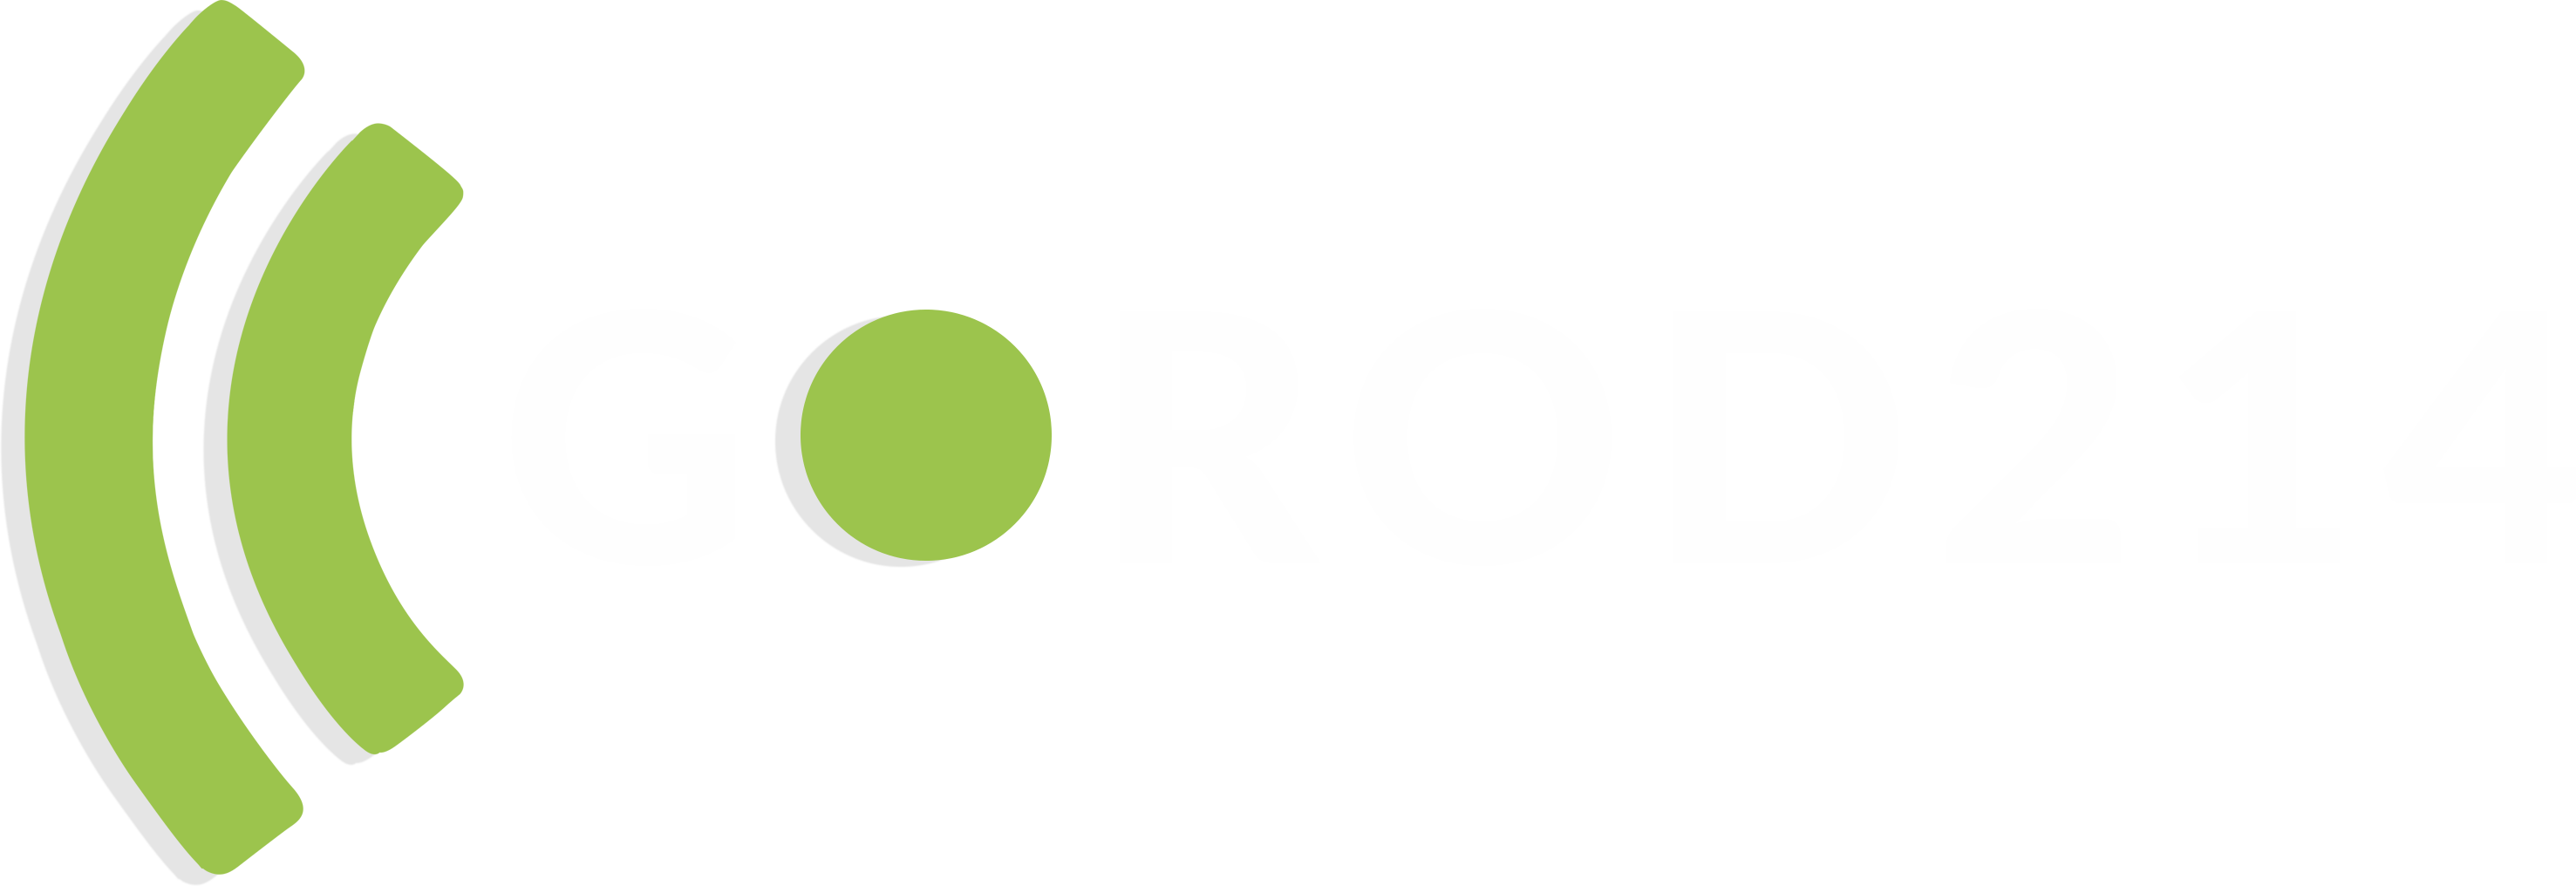 Gorod Logo